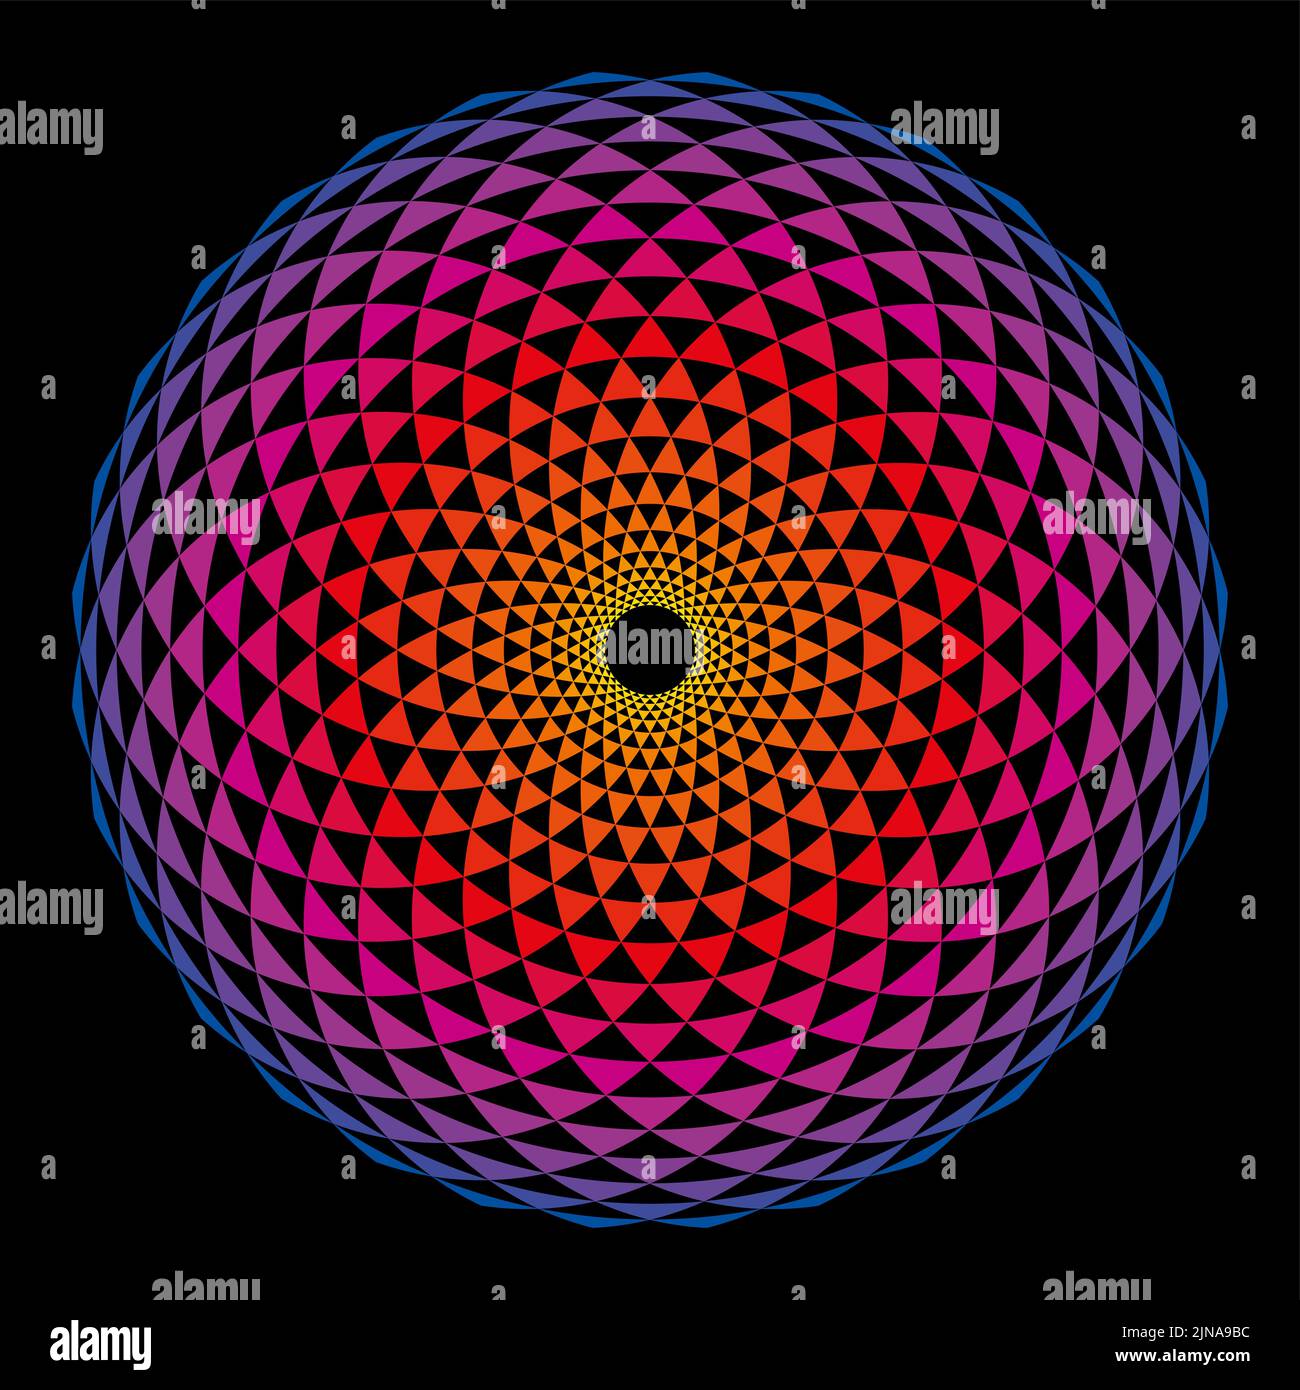 Colorato motivo Fibonacci a forma di sfera. Archi disposti a spirale, incrociati da cerchi, che creano triangoli di piegatura. Foto Stock